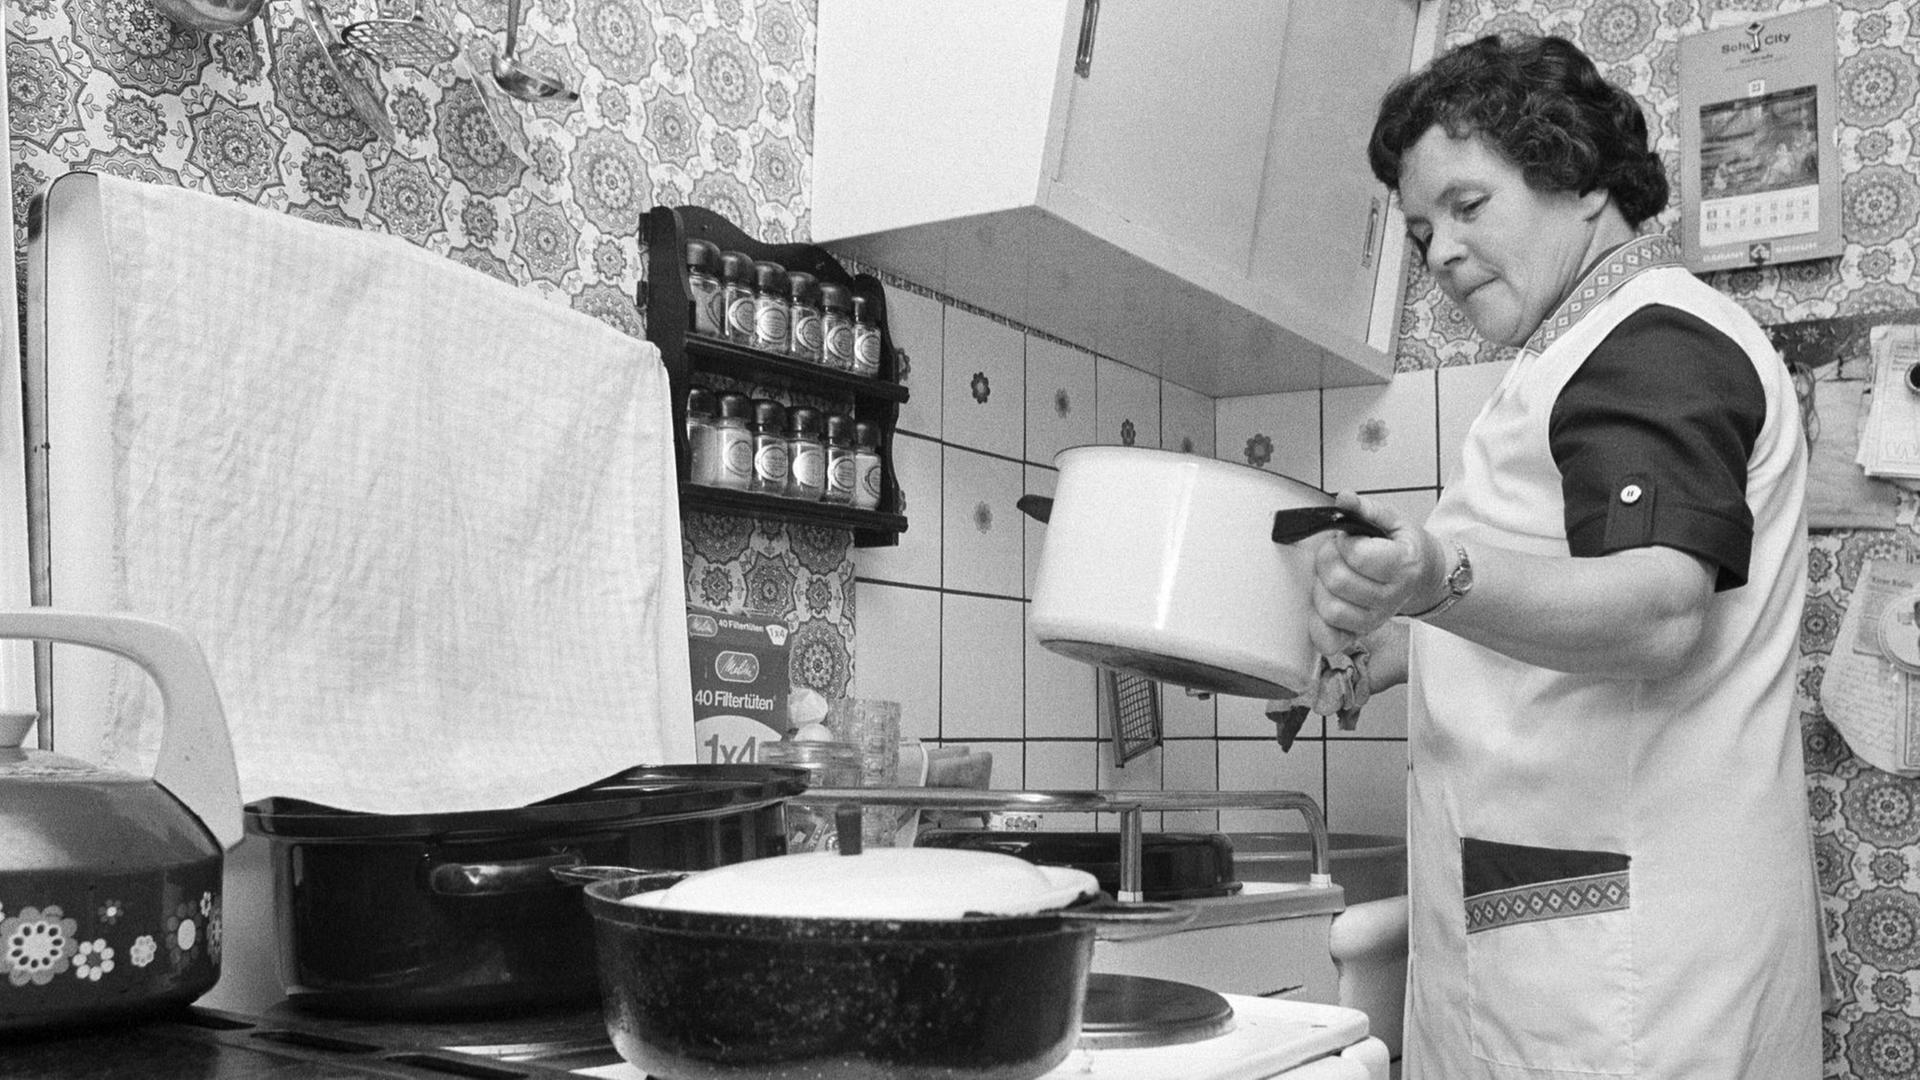 Eine ältere Frau bereitet an einem Herd das Essen zu - Deutschland in den 70ern.